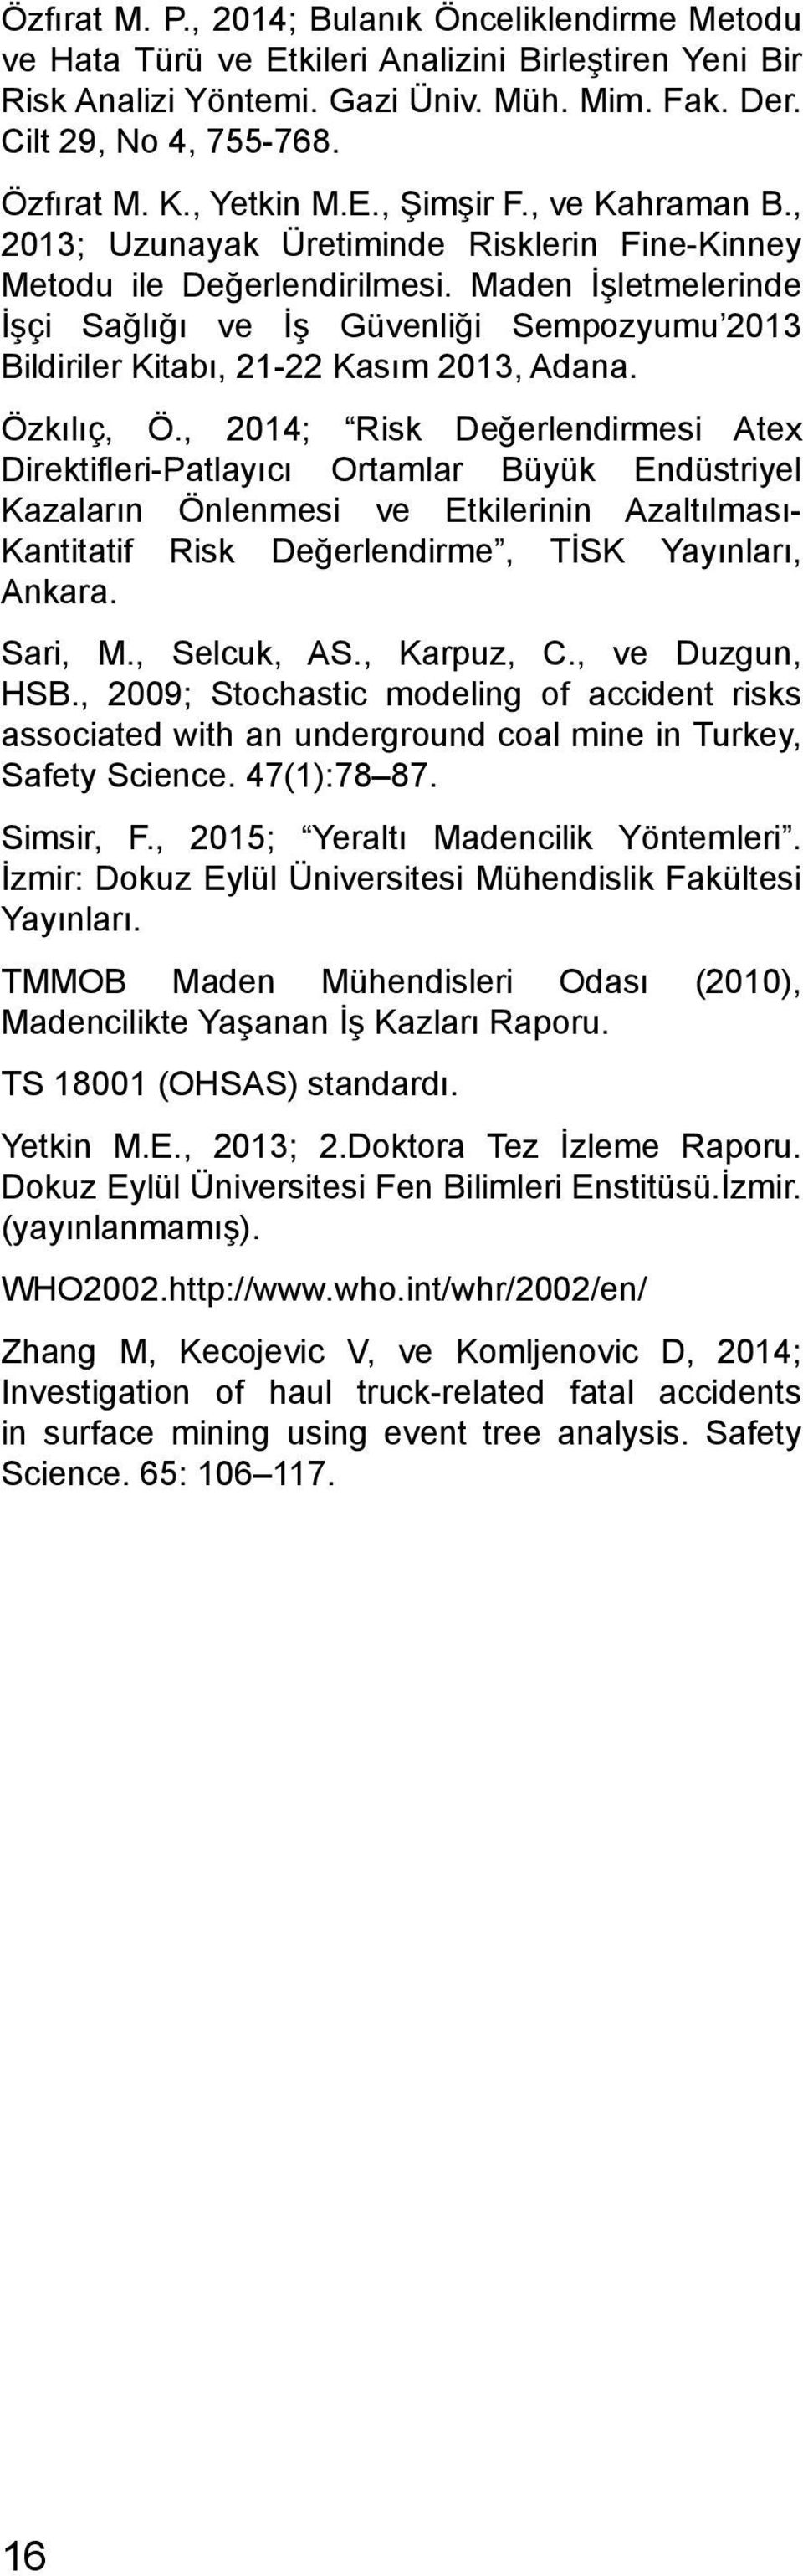 Maden İşletmelerinde İşçi Sağlığı ve İş Güvenliği Sempozyumu 2013 Bildiriler Kitabı, 21-22 Kasım 2013, Adana. Özkılıç, Ö.